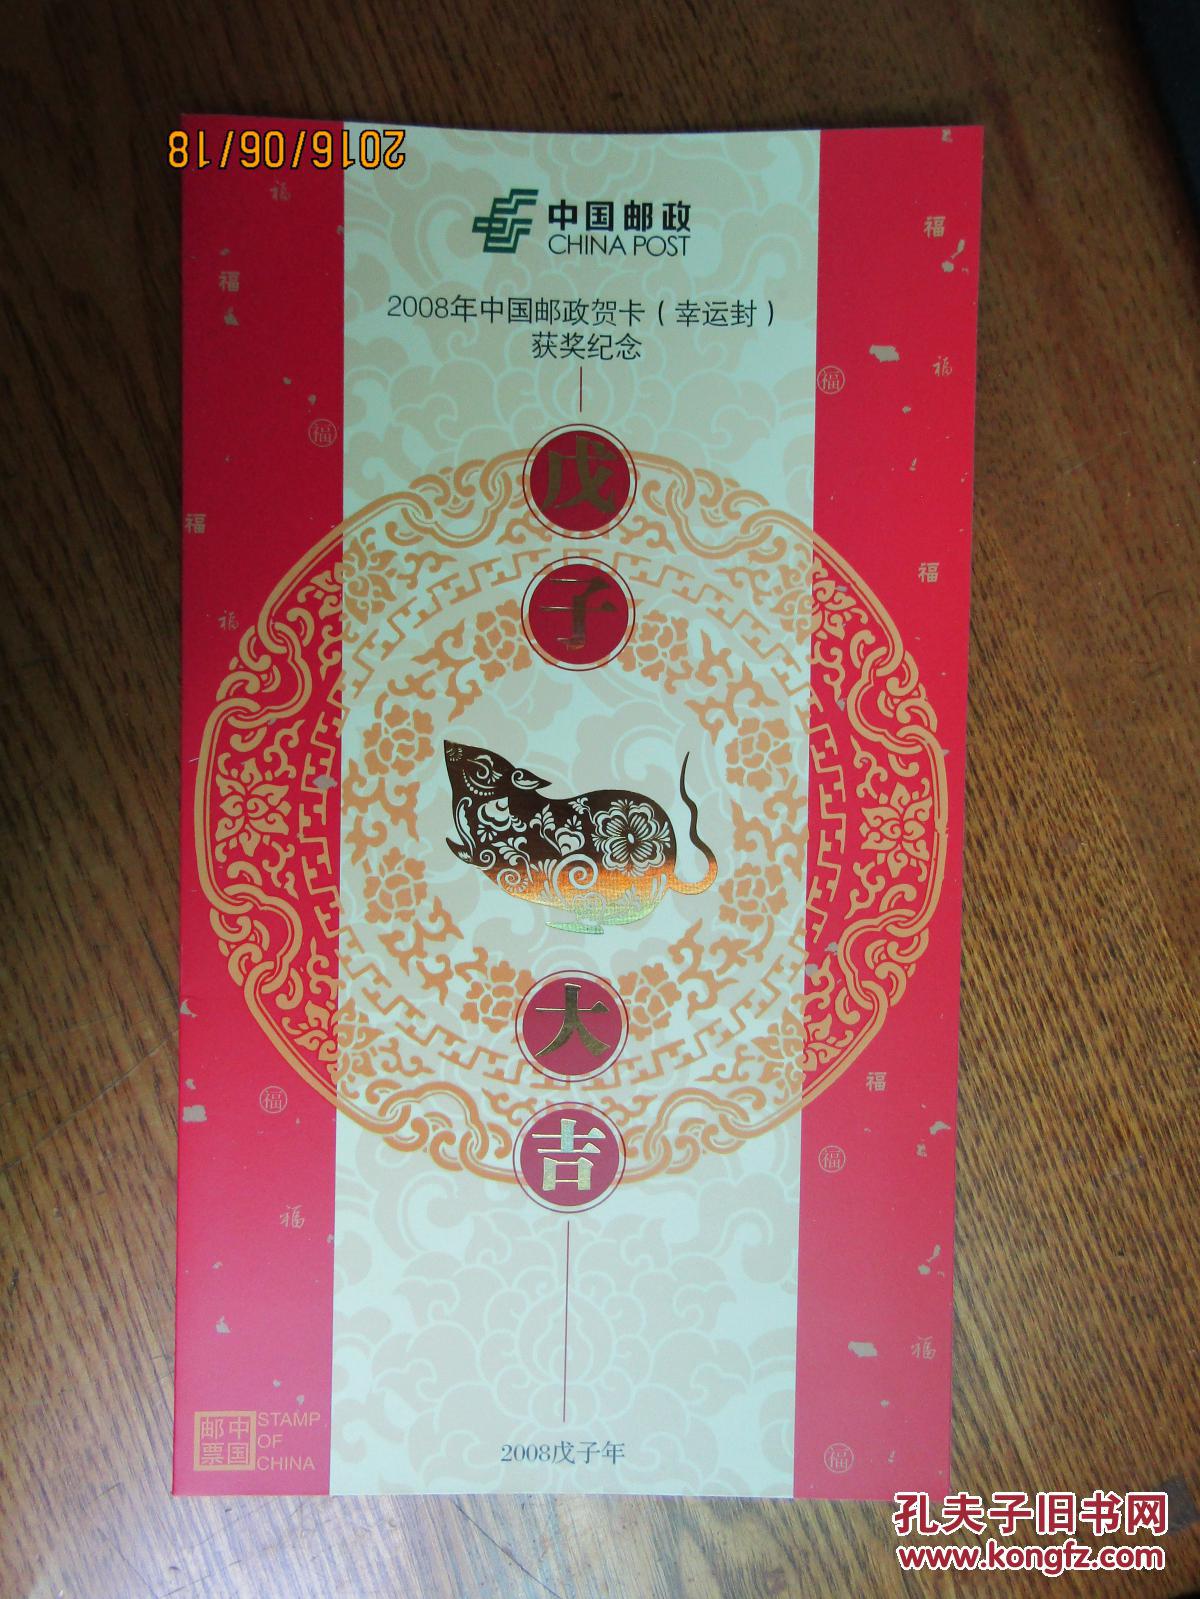 2008年中国邮政贺卡幸运封获奖纪念朱仙镇木板年画丝绸小版张